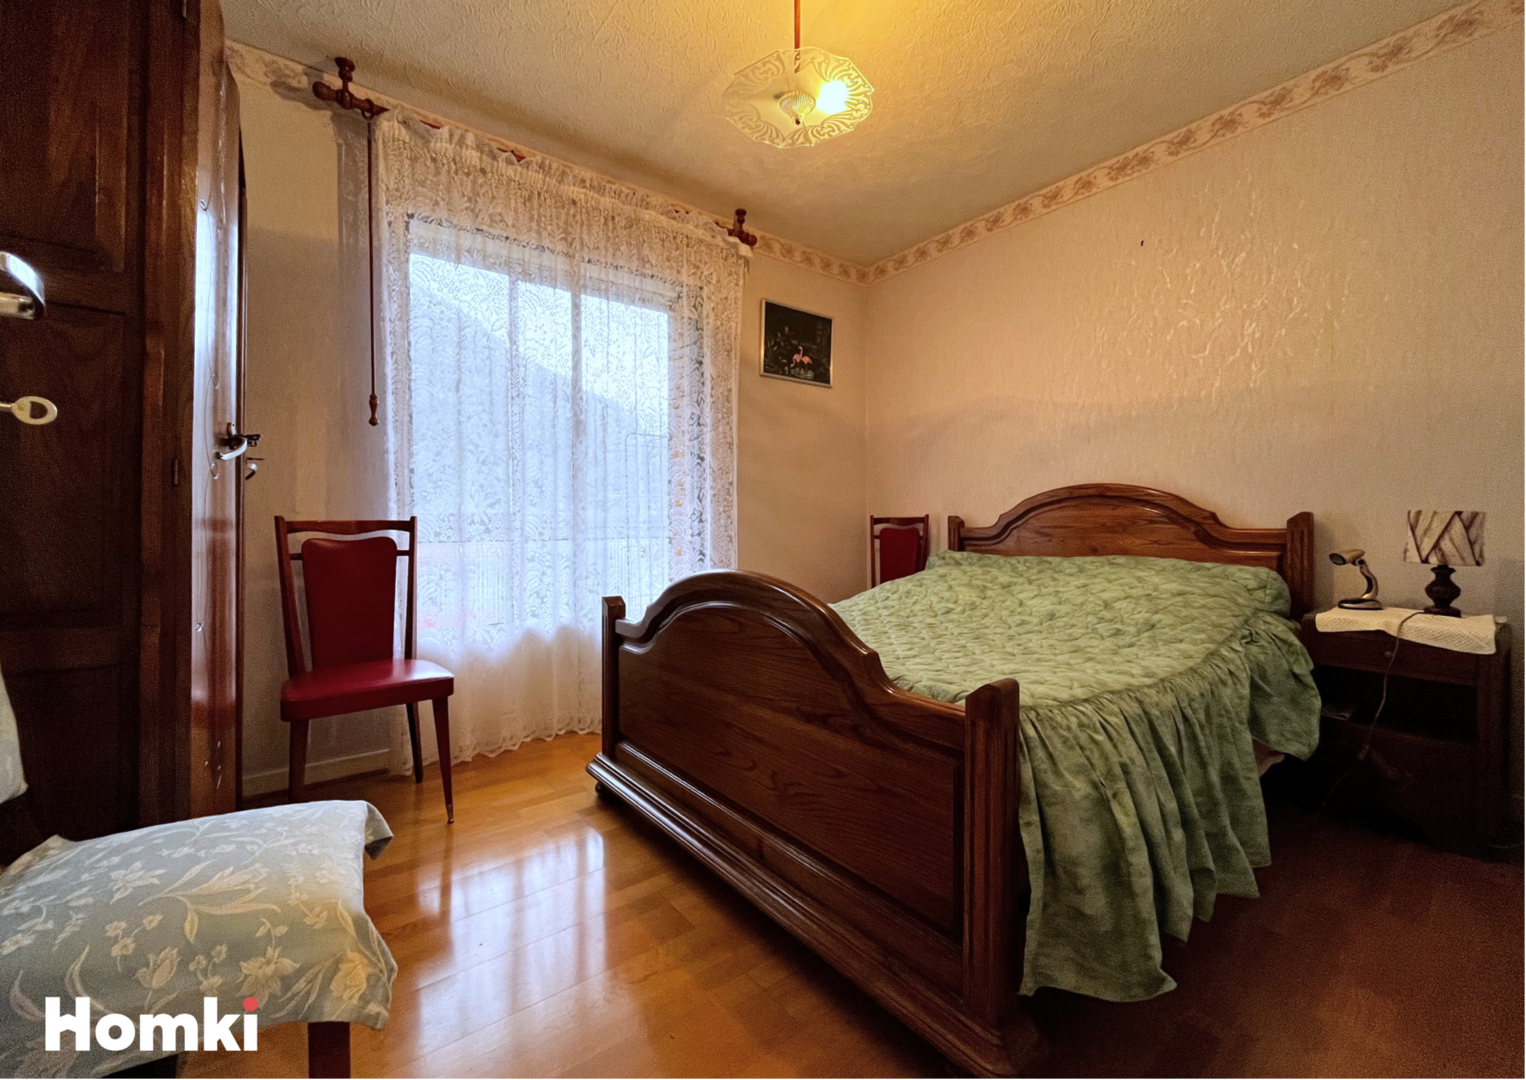 Homki - Vente Appartement  de 86.0 m² à La Mure 38350